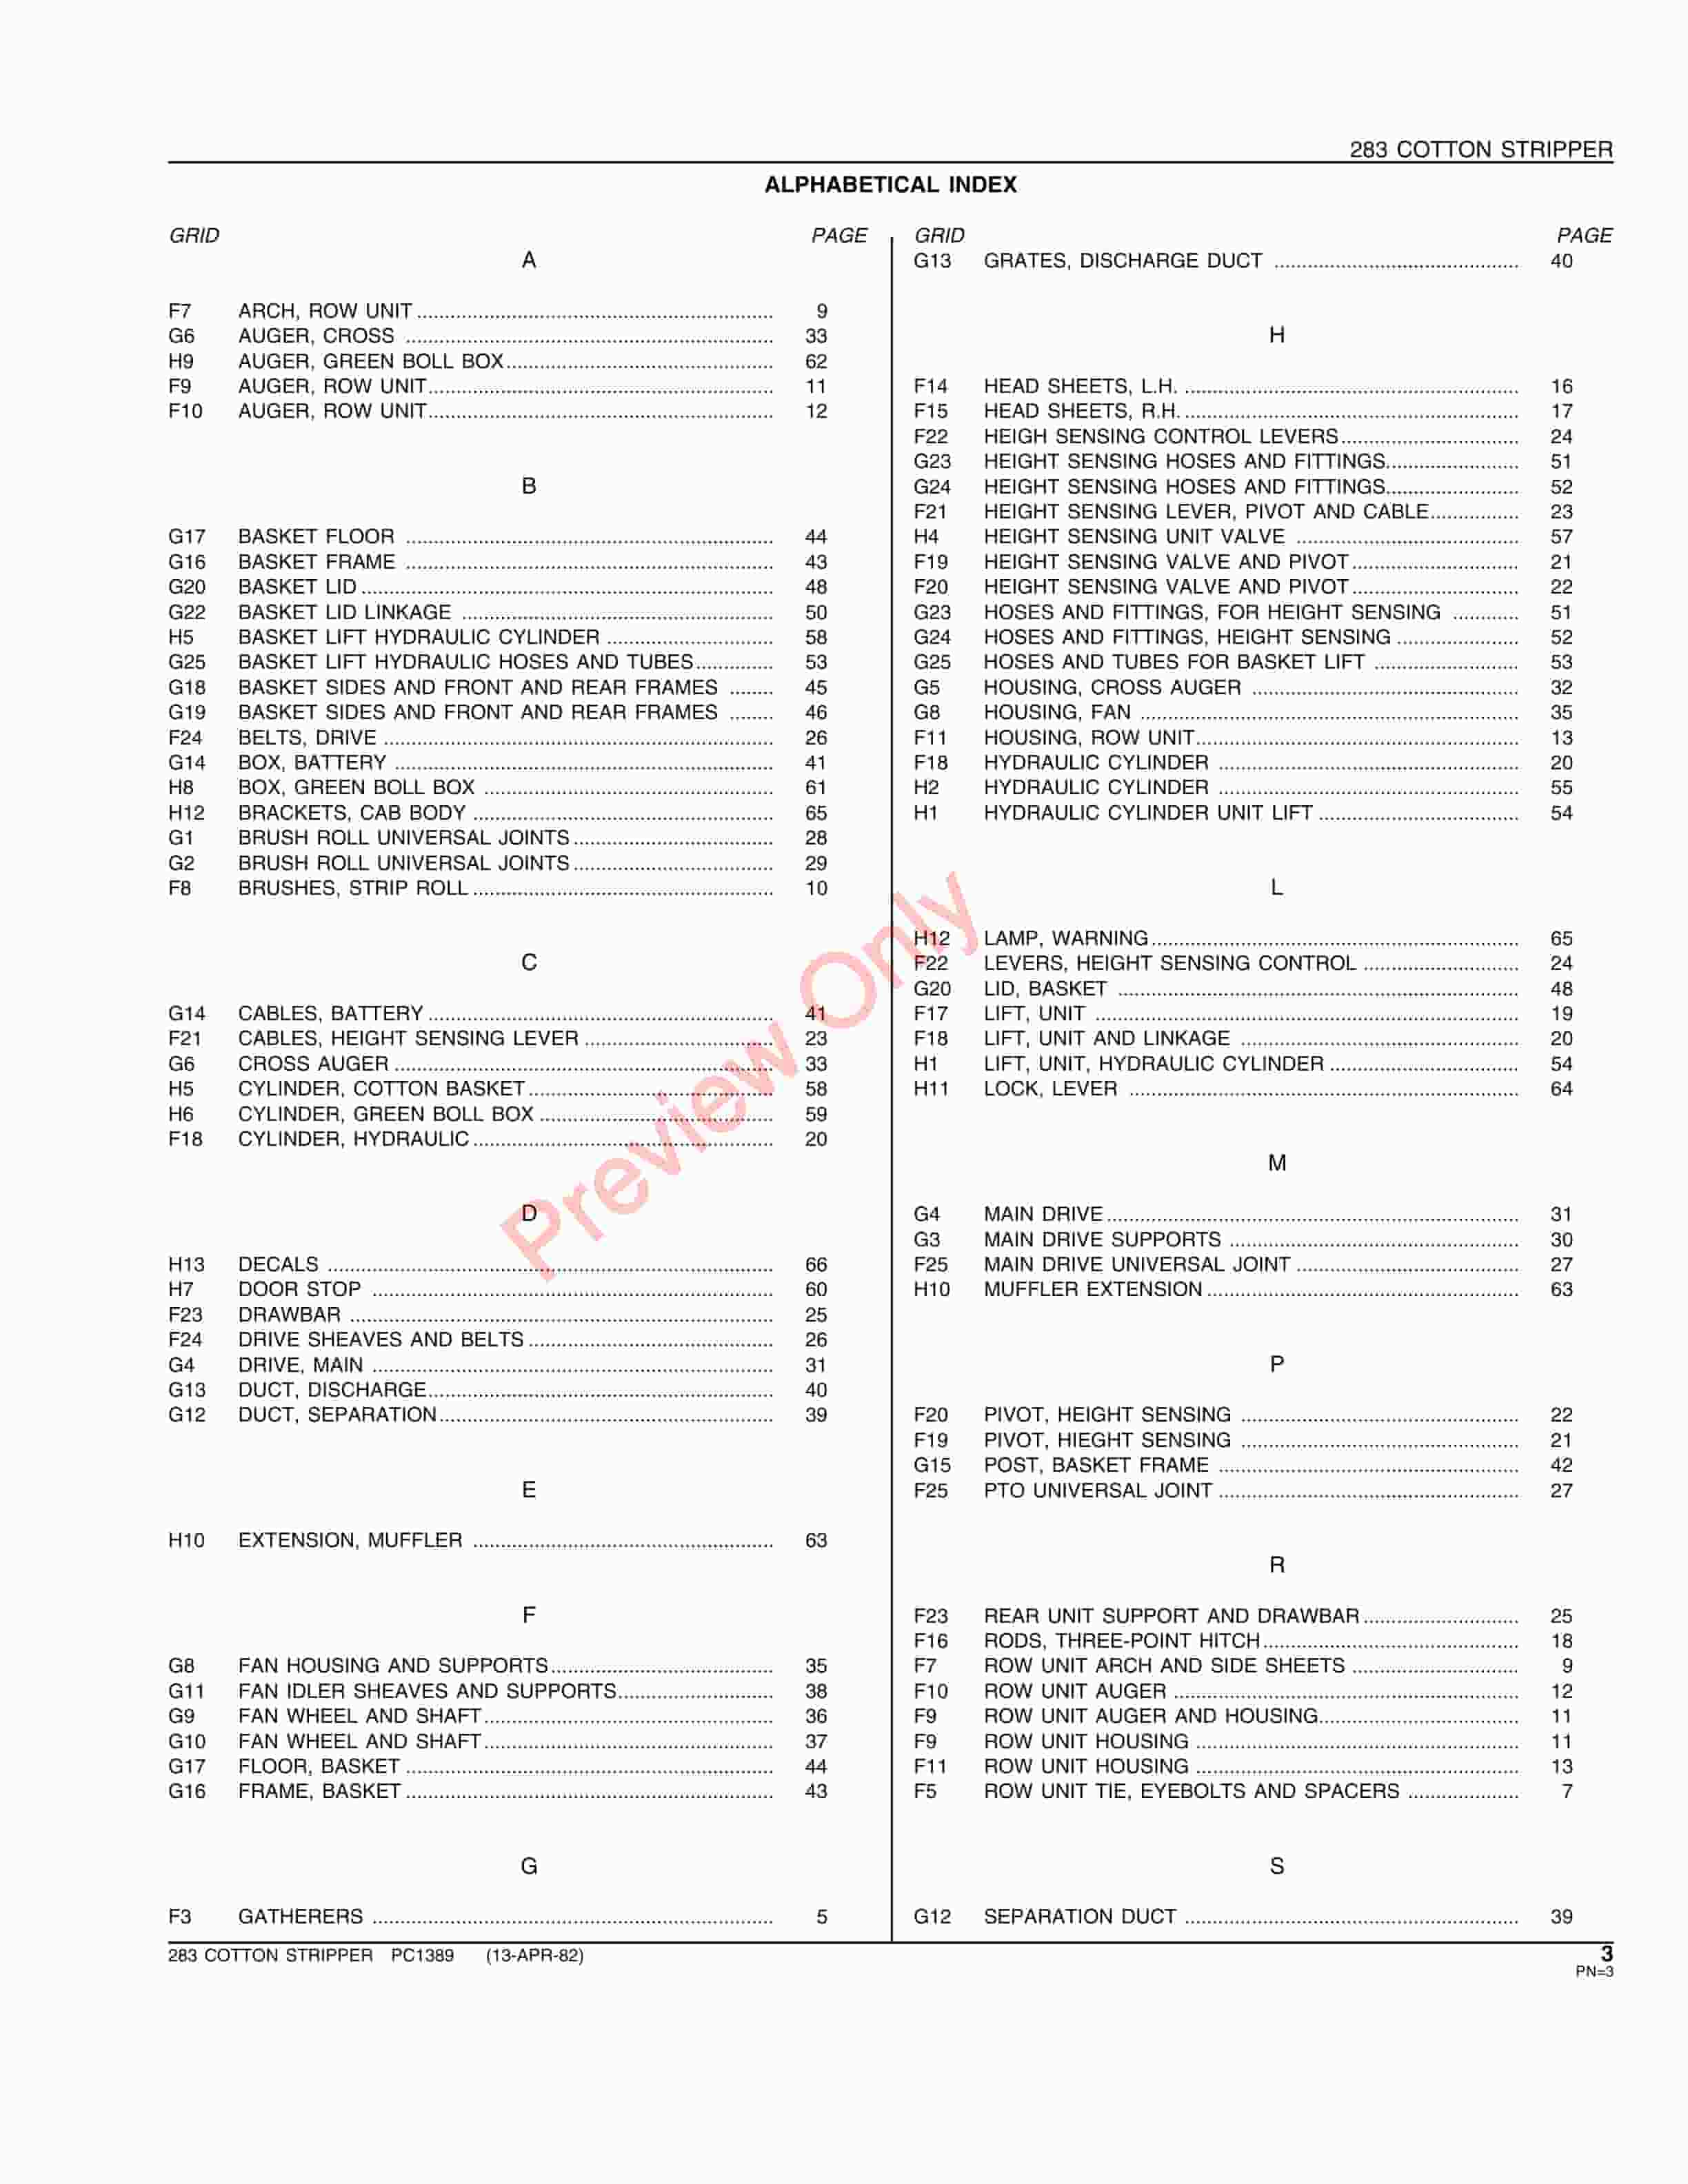 John Deere 283 Cotton Stripper Parts Catalog PC1389 13APR82-5